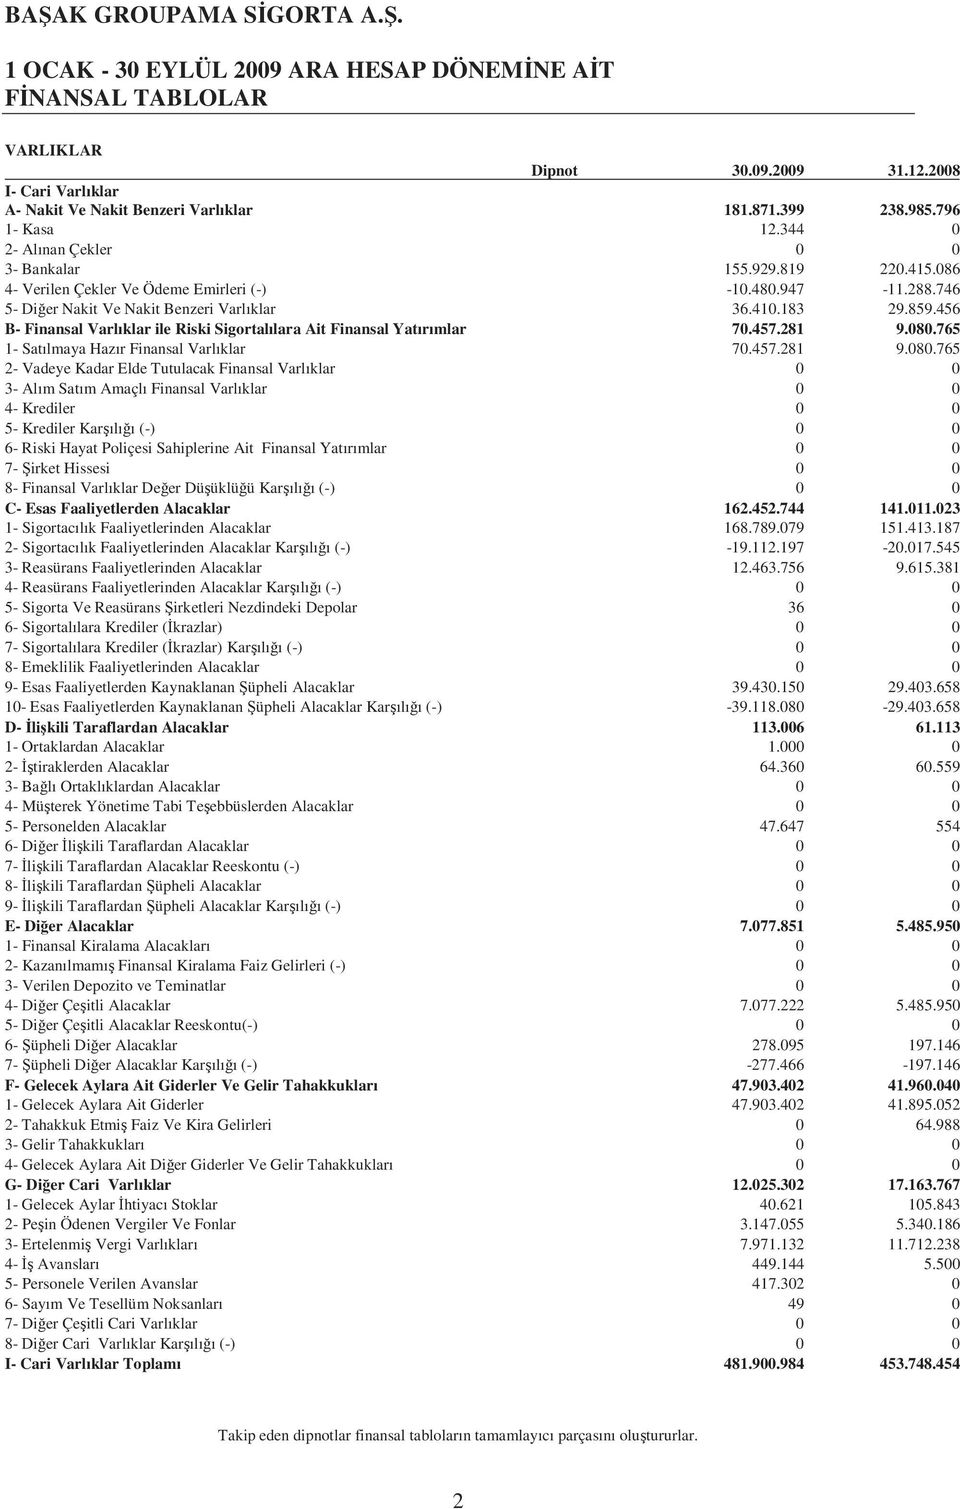 456 B- Finansal Varlıklar ile Riski Sigortalılara Ait Finansal Yatırımlar 70.457.281 9.080.